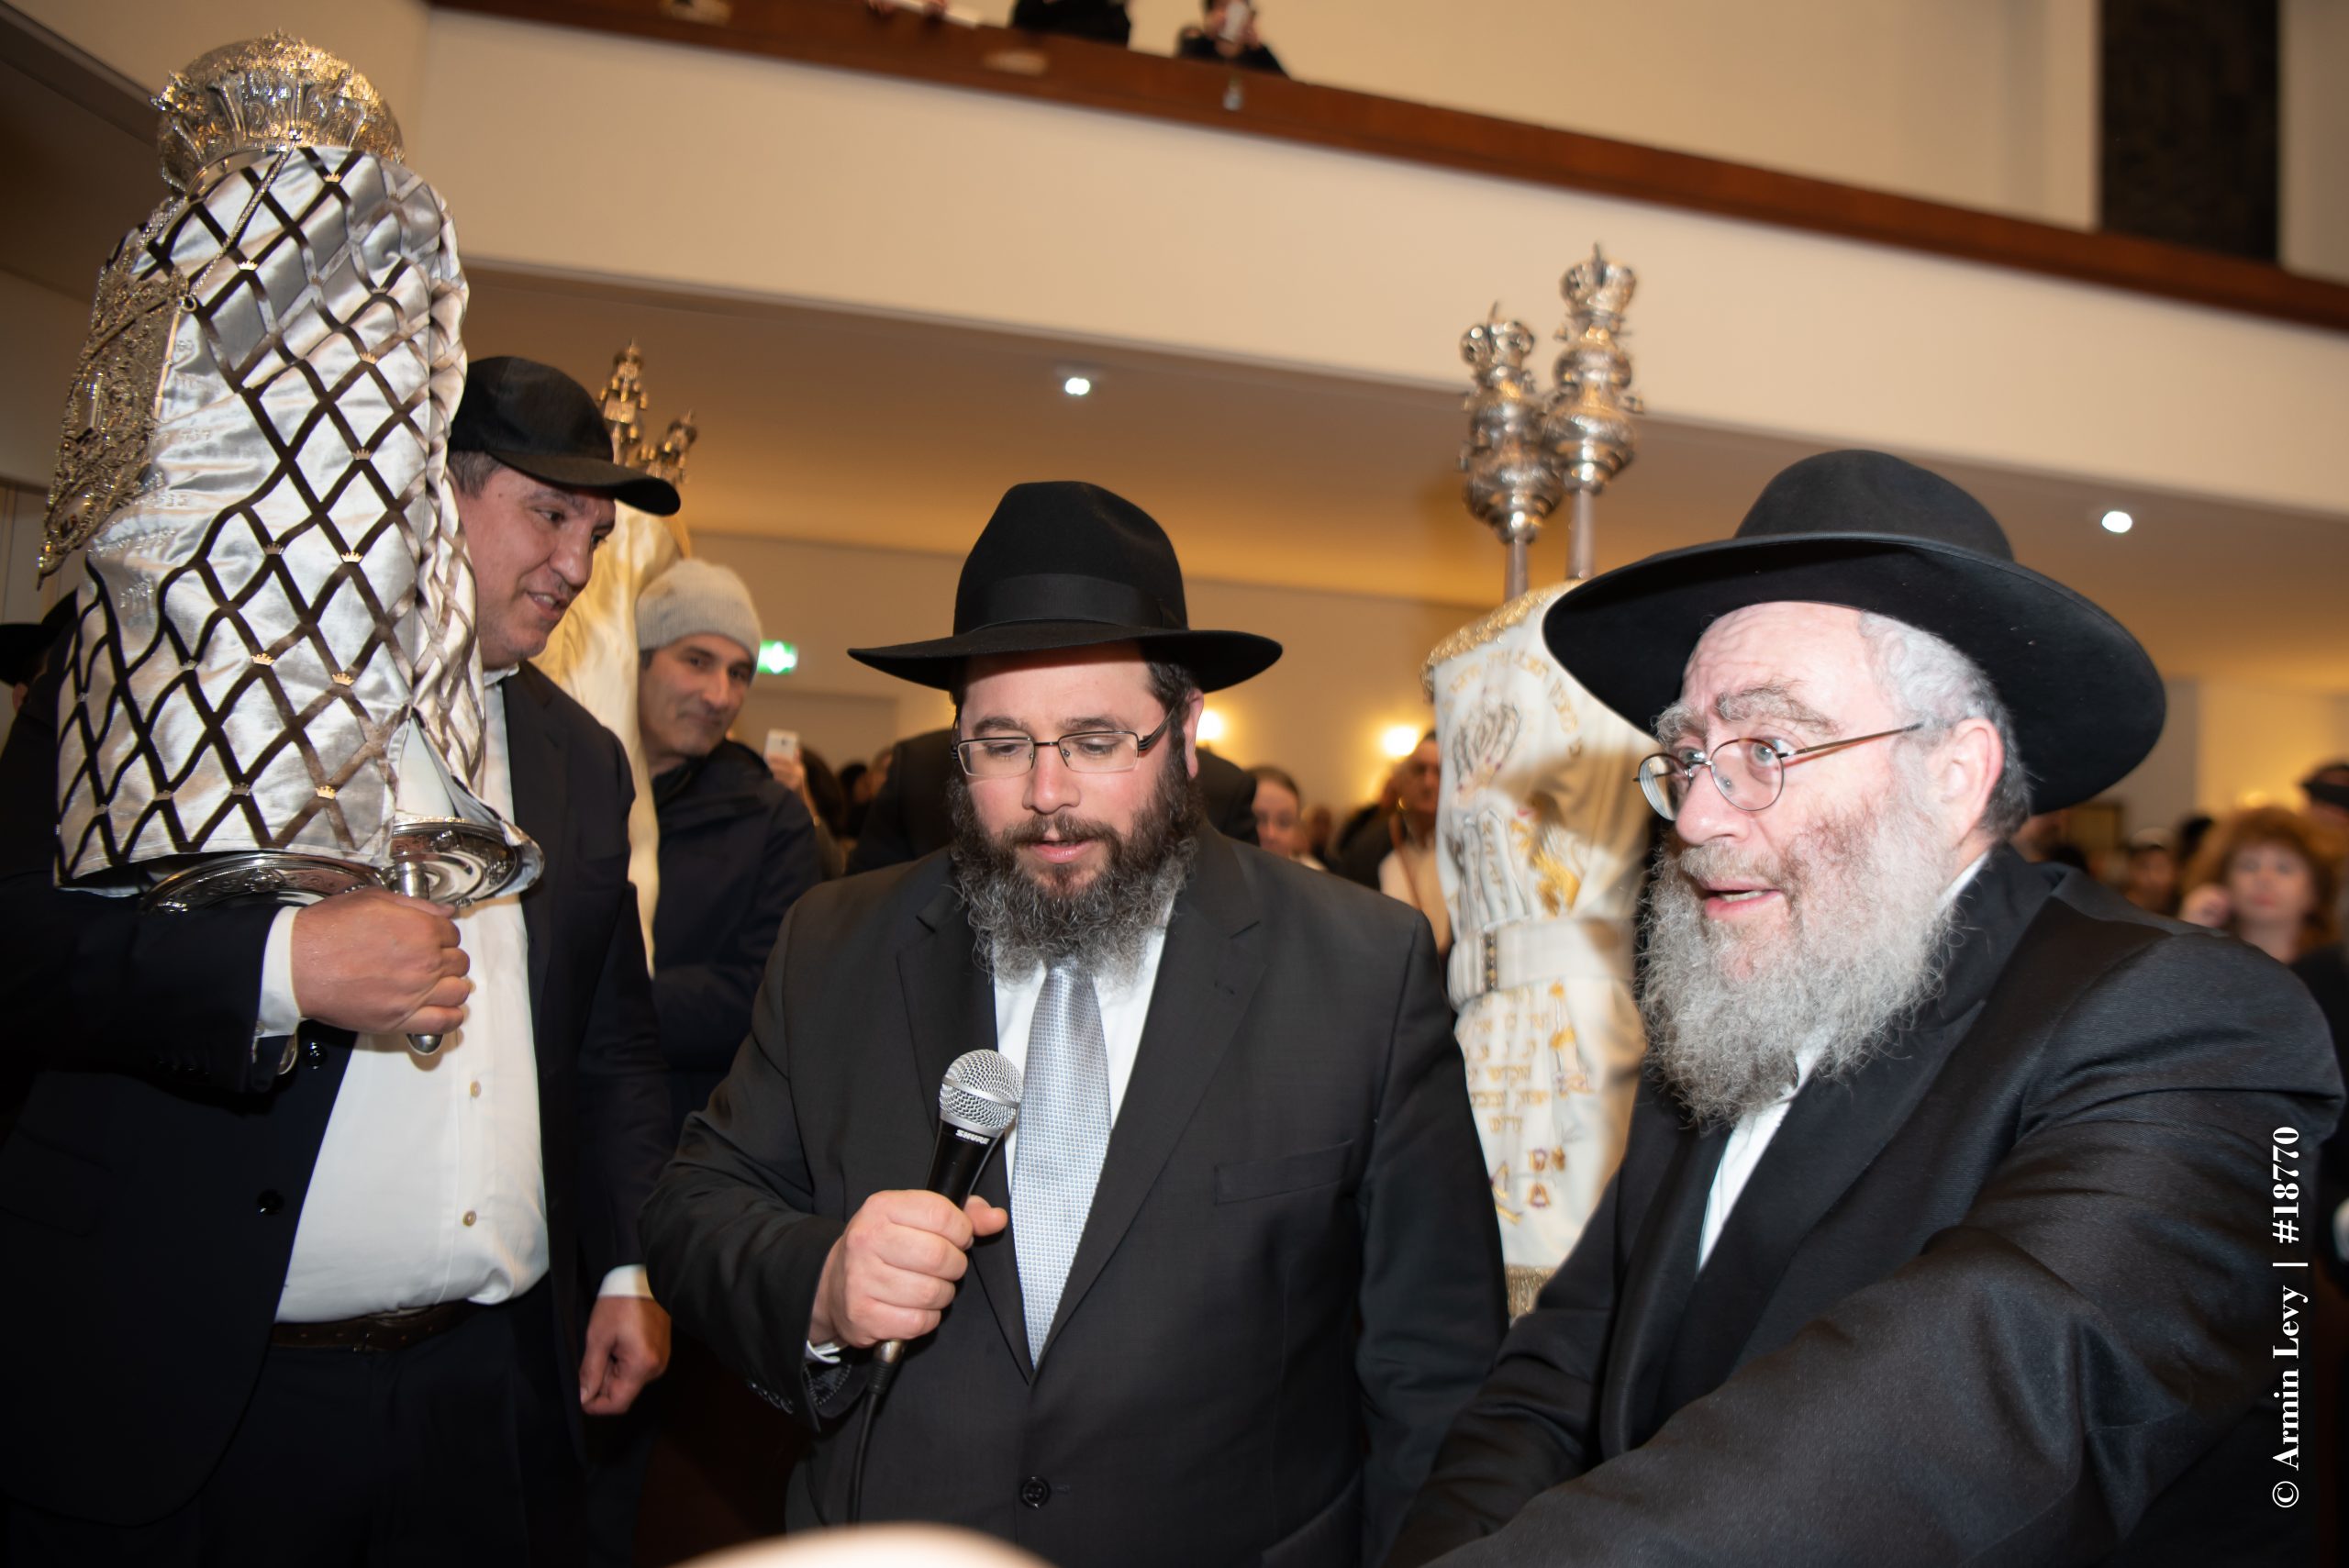 Trotz Tragödie: Chabad Hannover bleibt stark und geht seinen Weg weiter